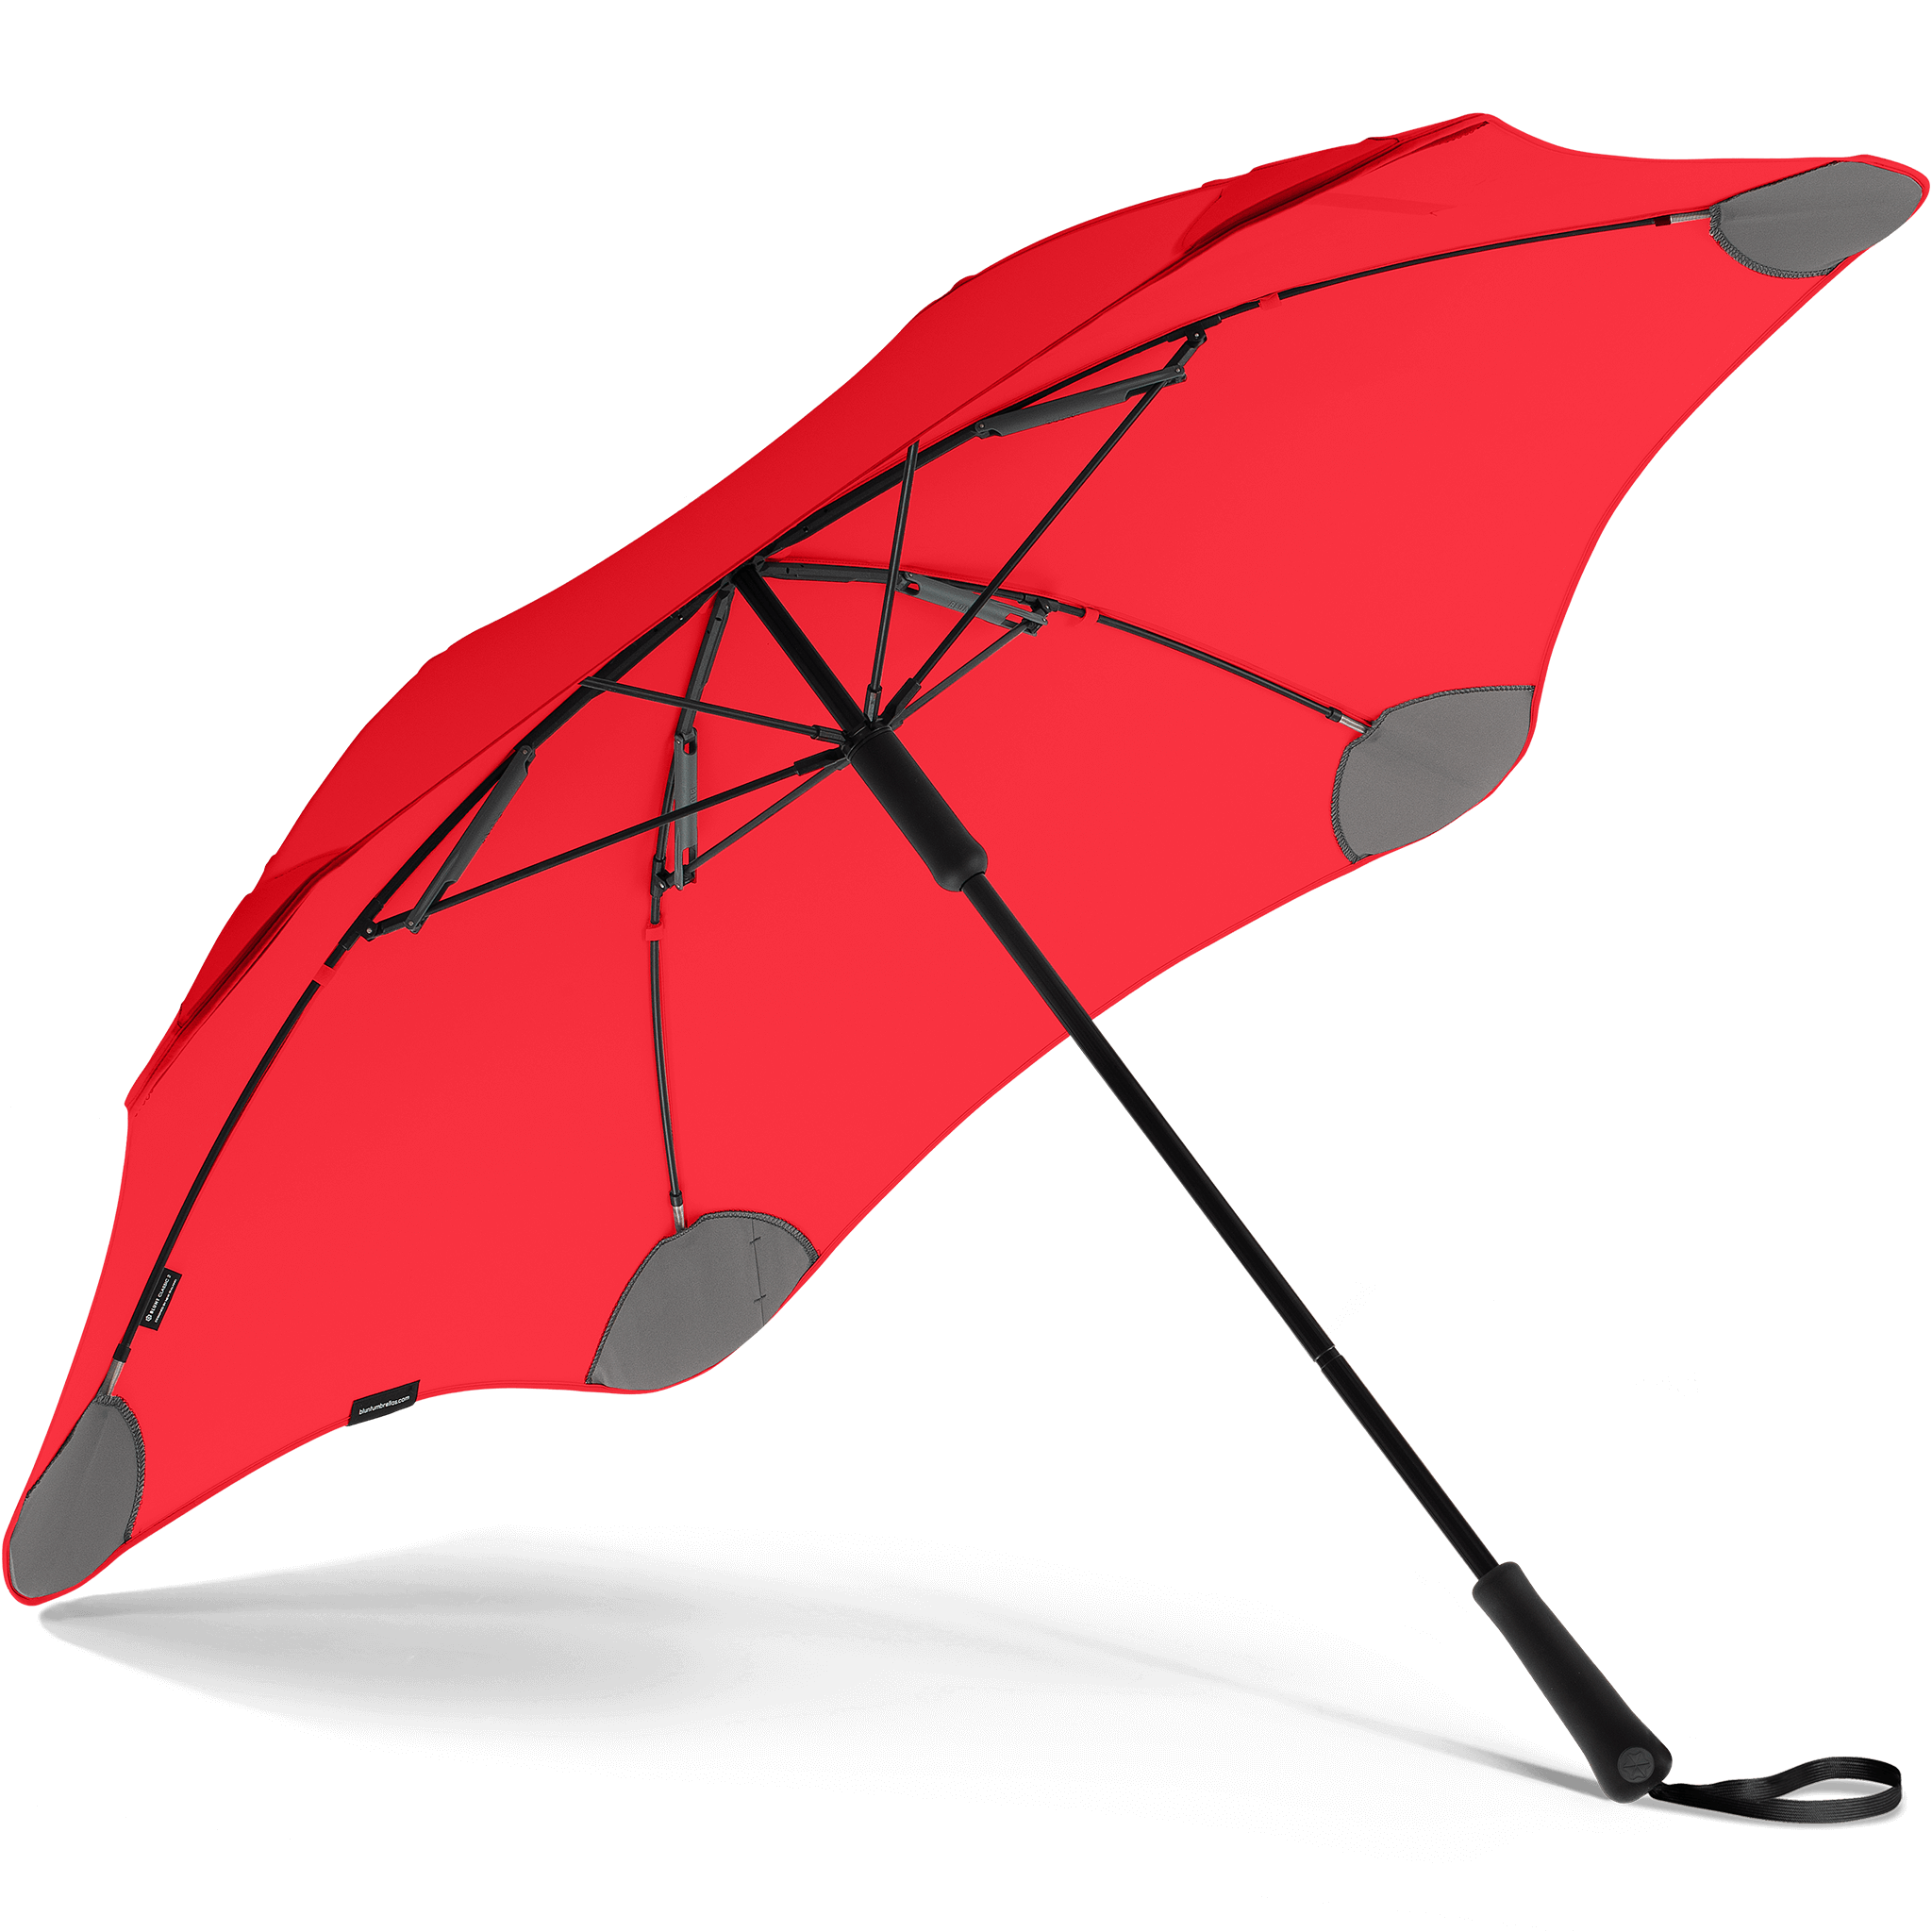 Blunt Metro classic 2020 umbrella Red inside